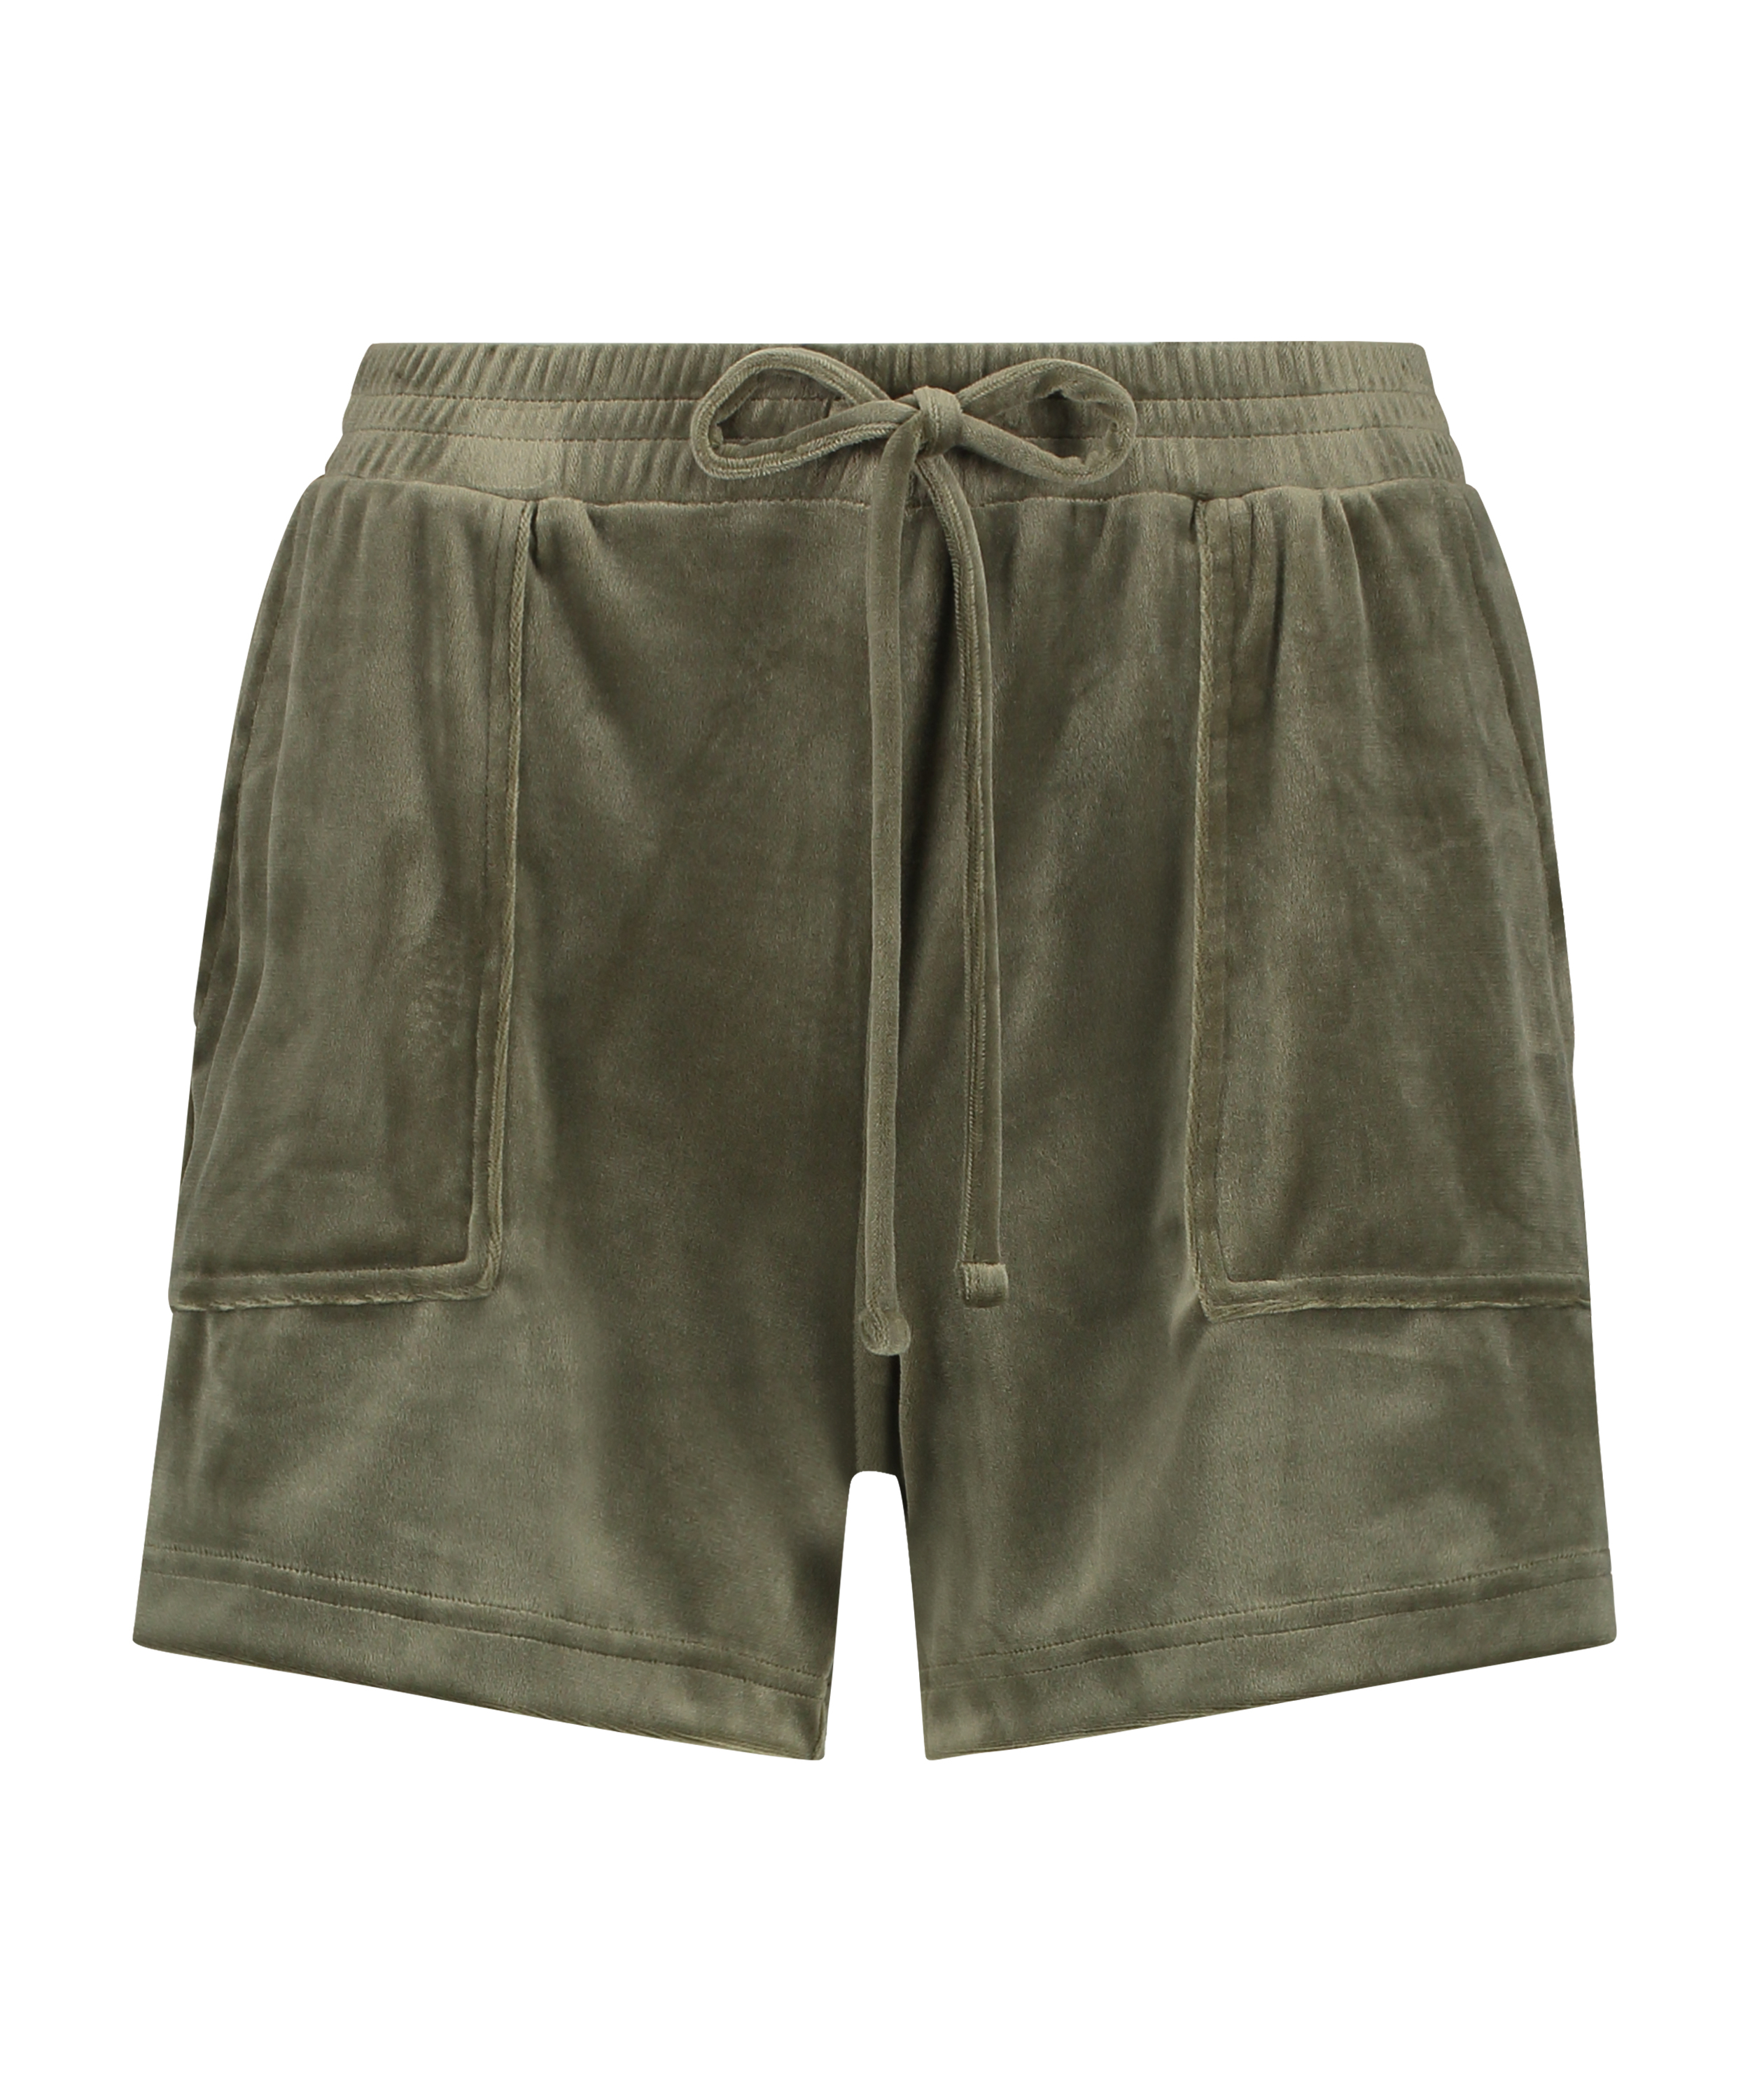 Velvet Pocket shorts, Green, main